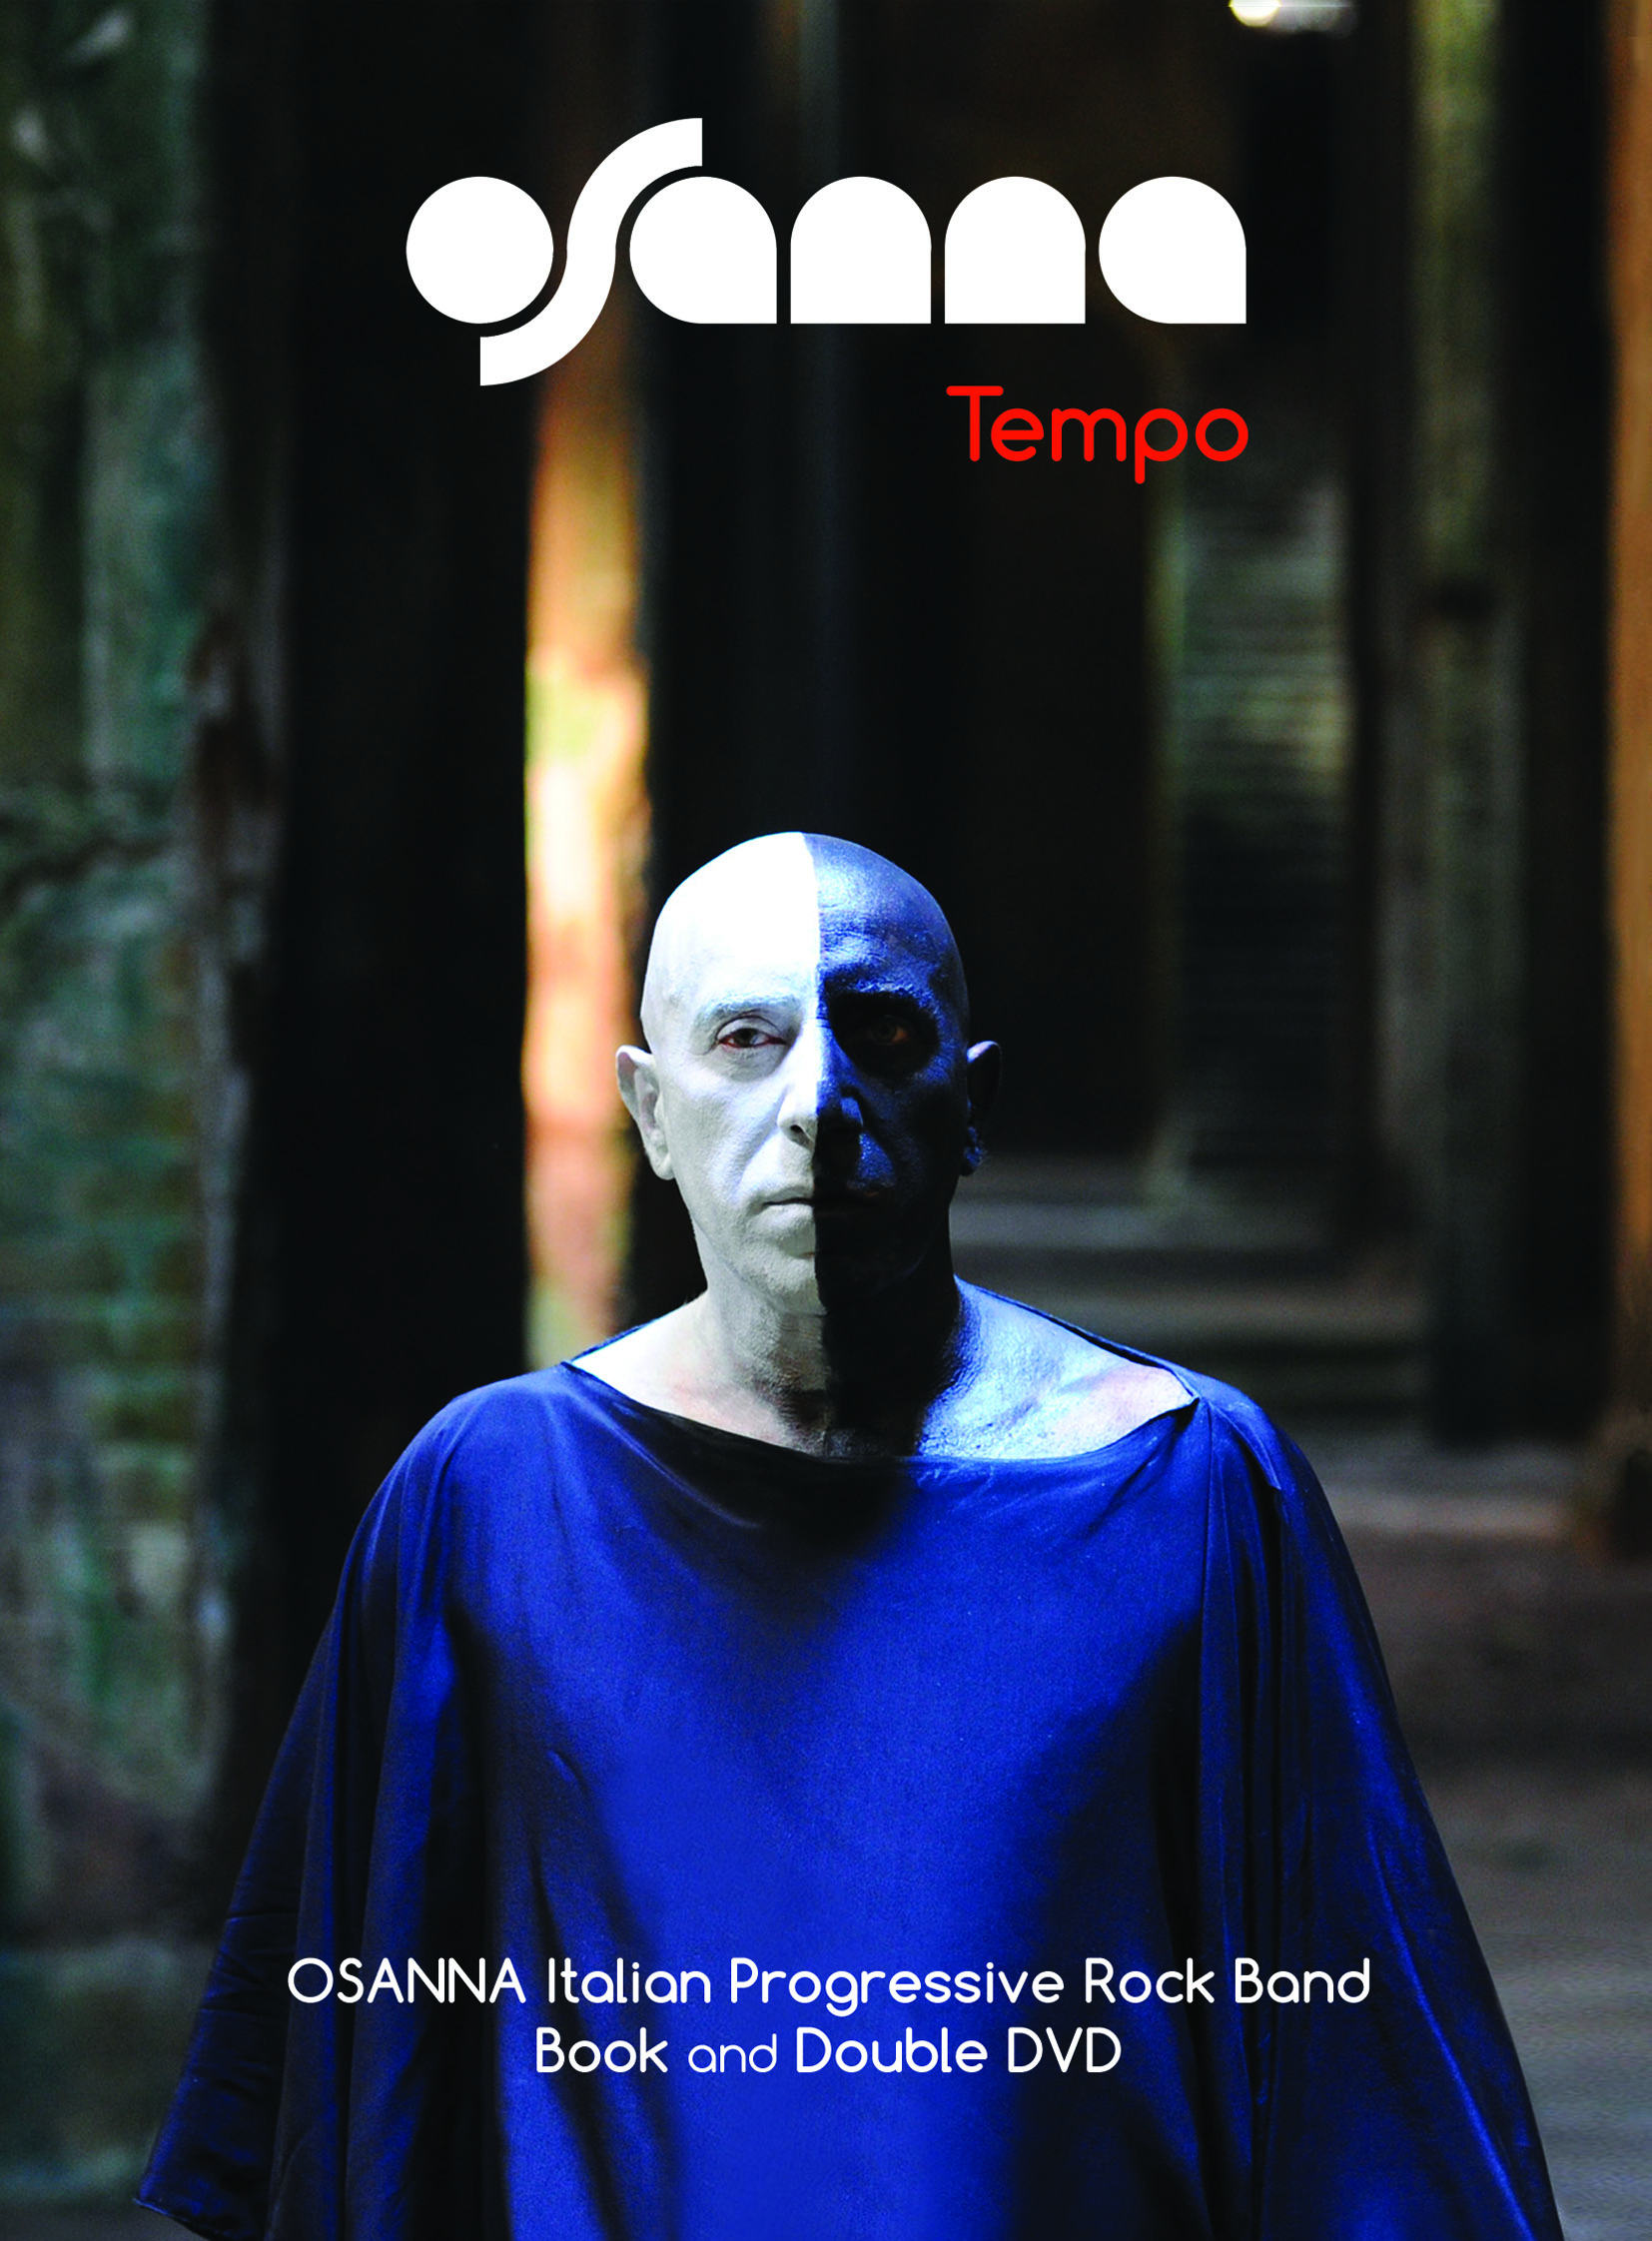 OSANNA - "TEMPO" - 2DVD+book